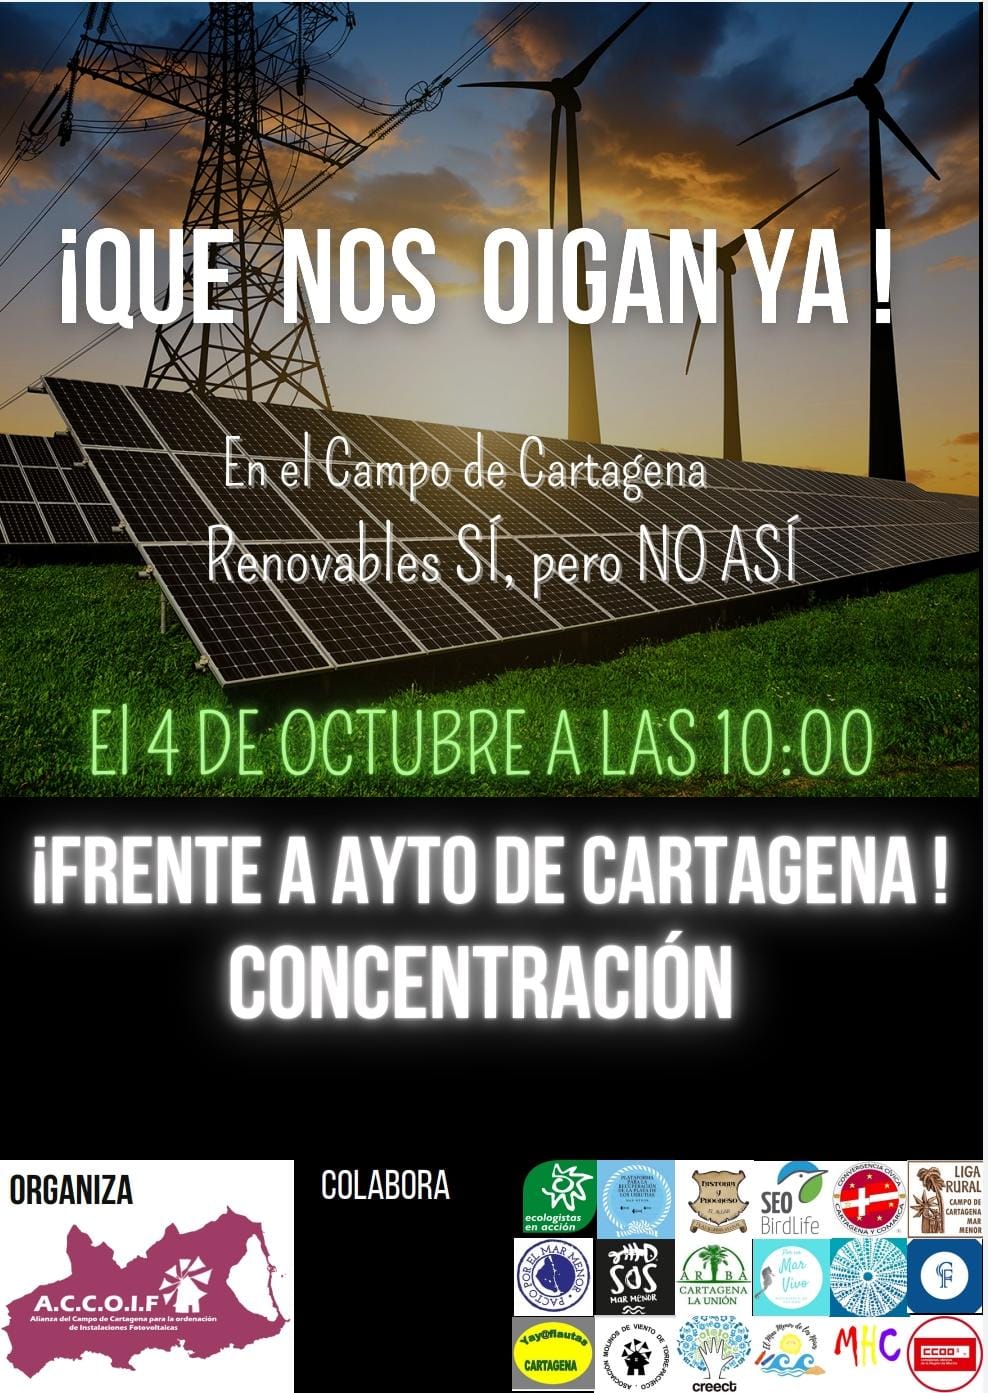 El Ayto.Cartagena aprueba proyectos fotovoltaicos sin hacer impacto ambiental, en contra de más de 30 colectivos que lo consideran nefasto